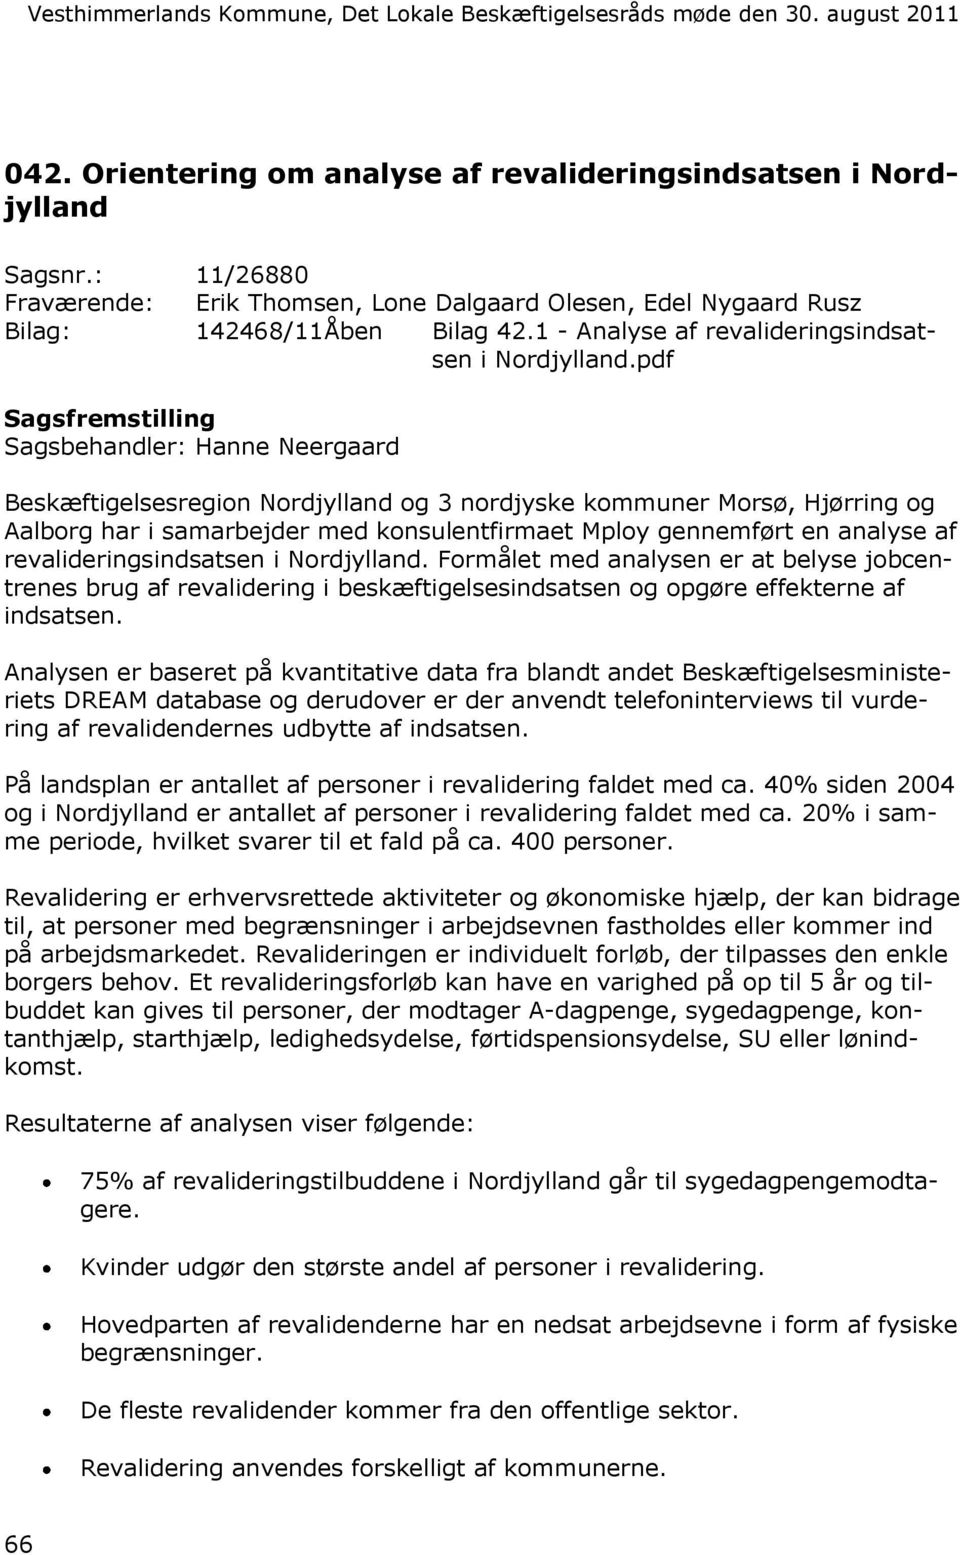 pdf Beskæftigelsesregion Nordjylland og 3 nordjyske kommuner Morsø, Hjørring og Aalborg har i samarbejder med konsulentfirmaet Mploy gennemført en analyse af revalideringsindsatsen i Nordjylland.